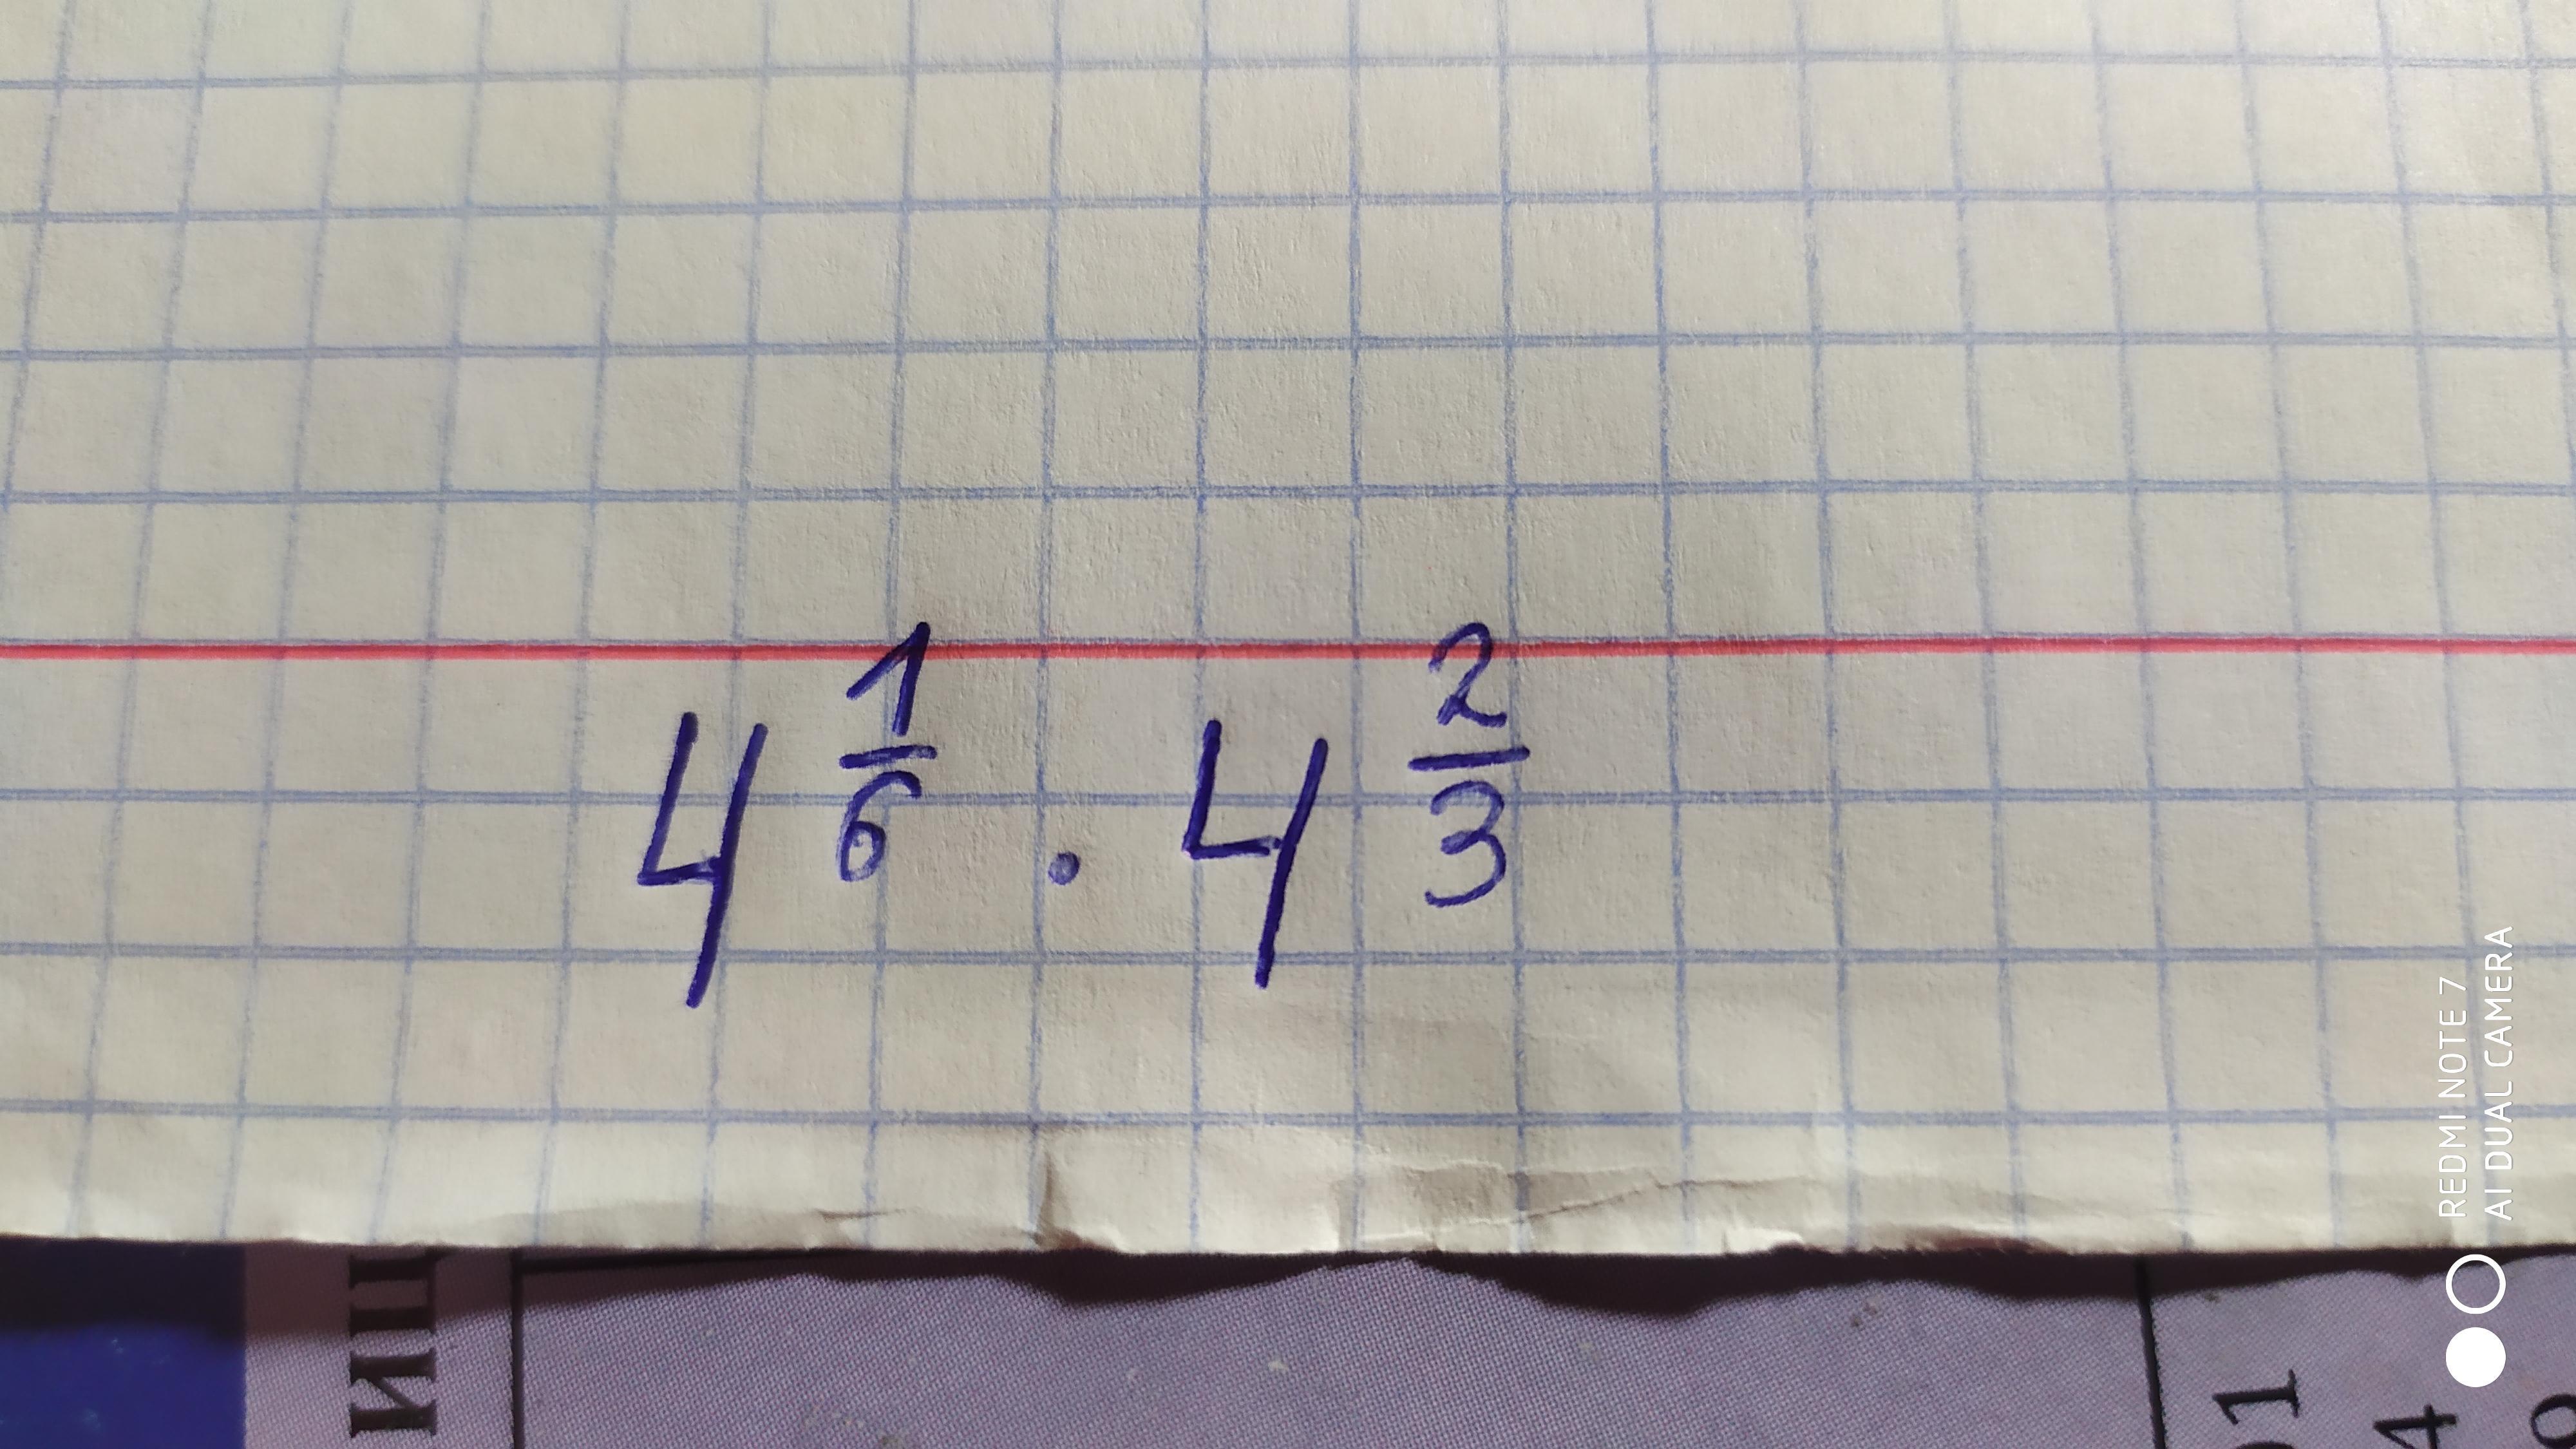 1 6 умножить на 12 9. 4х умножить 6х15 4. 35 Умножить на 6. Корень 15 делить на 4.